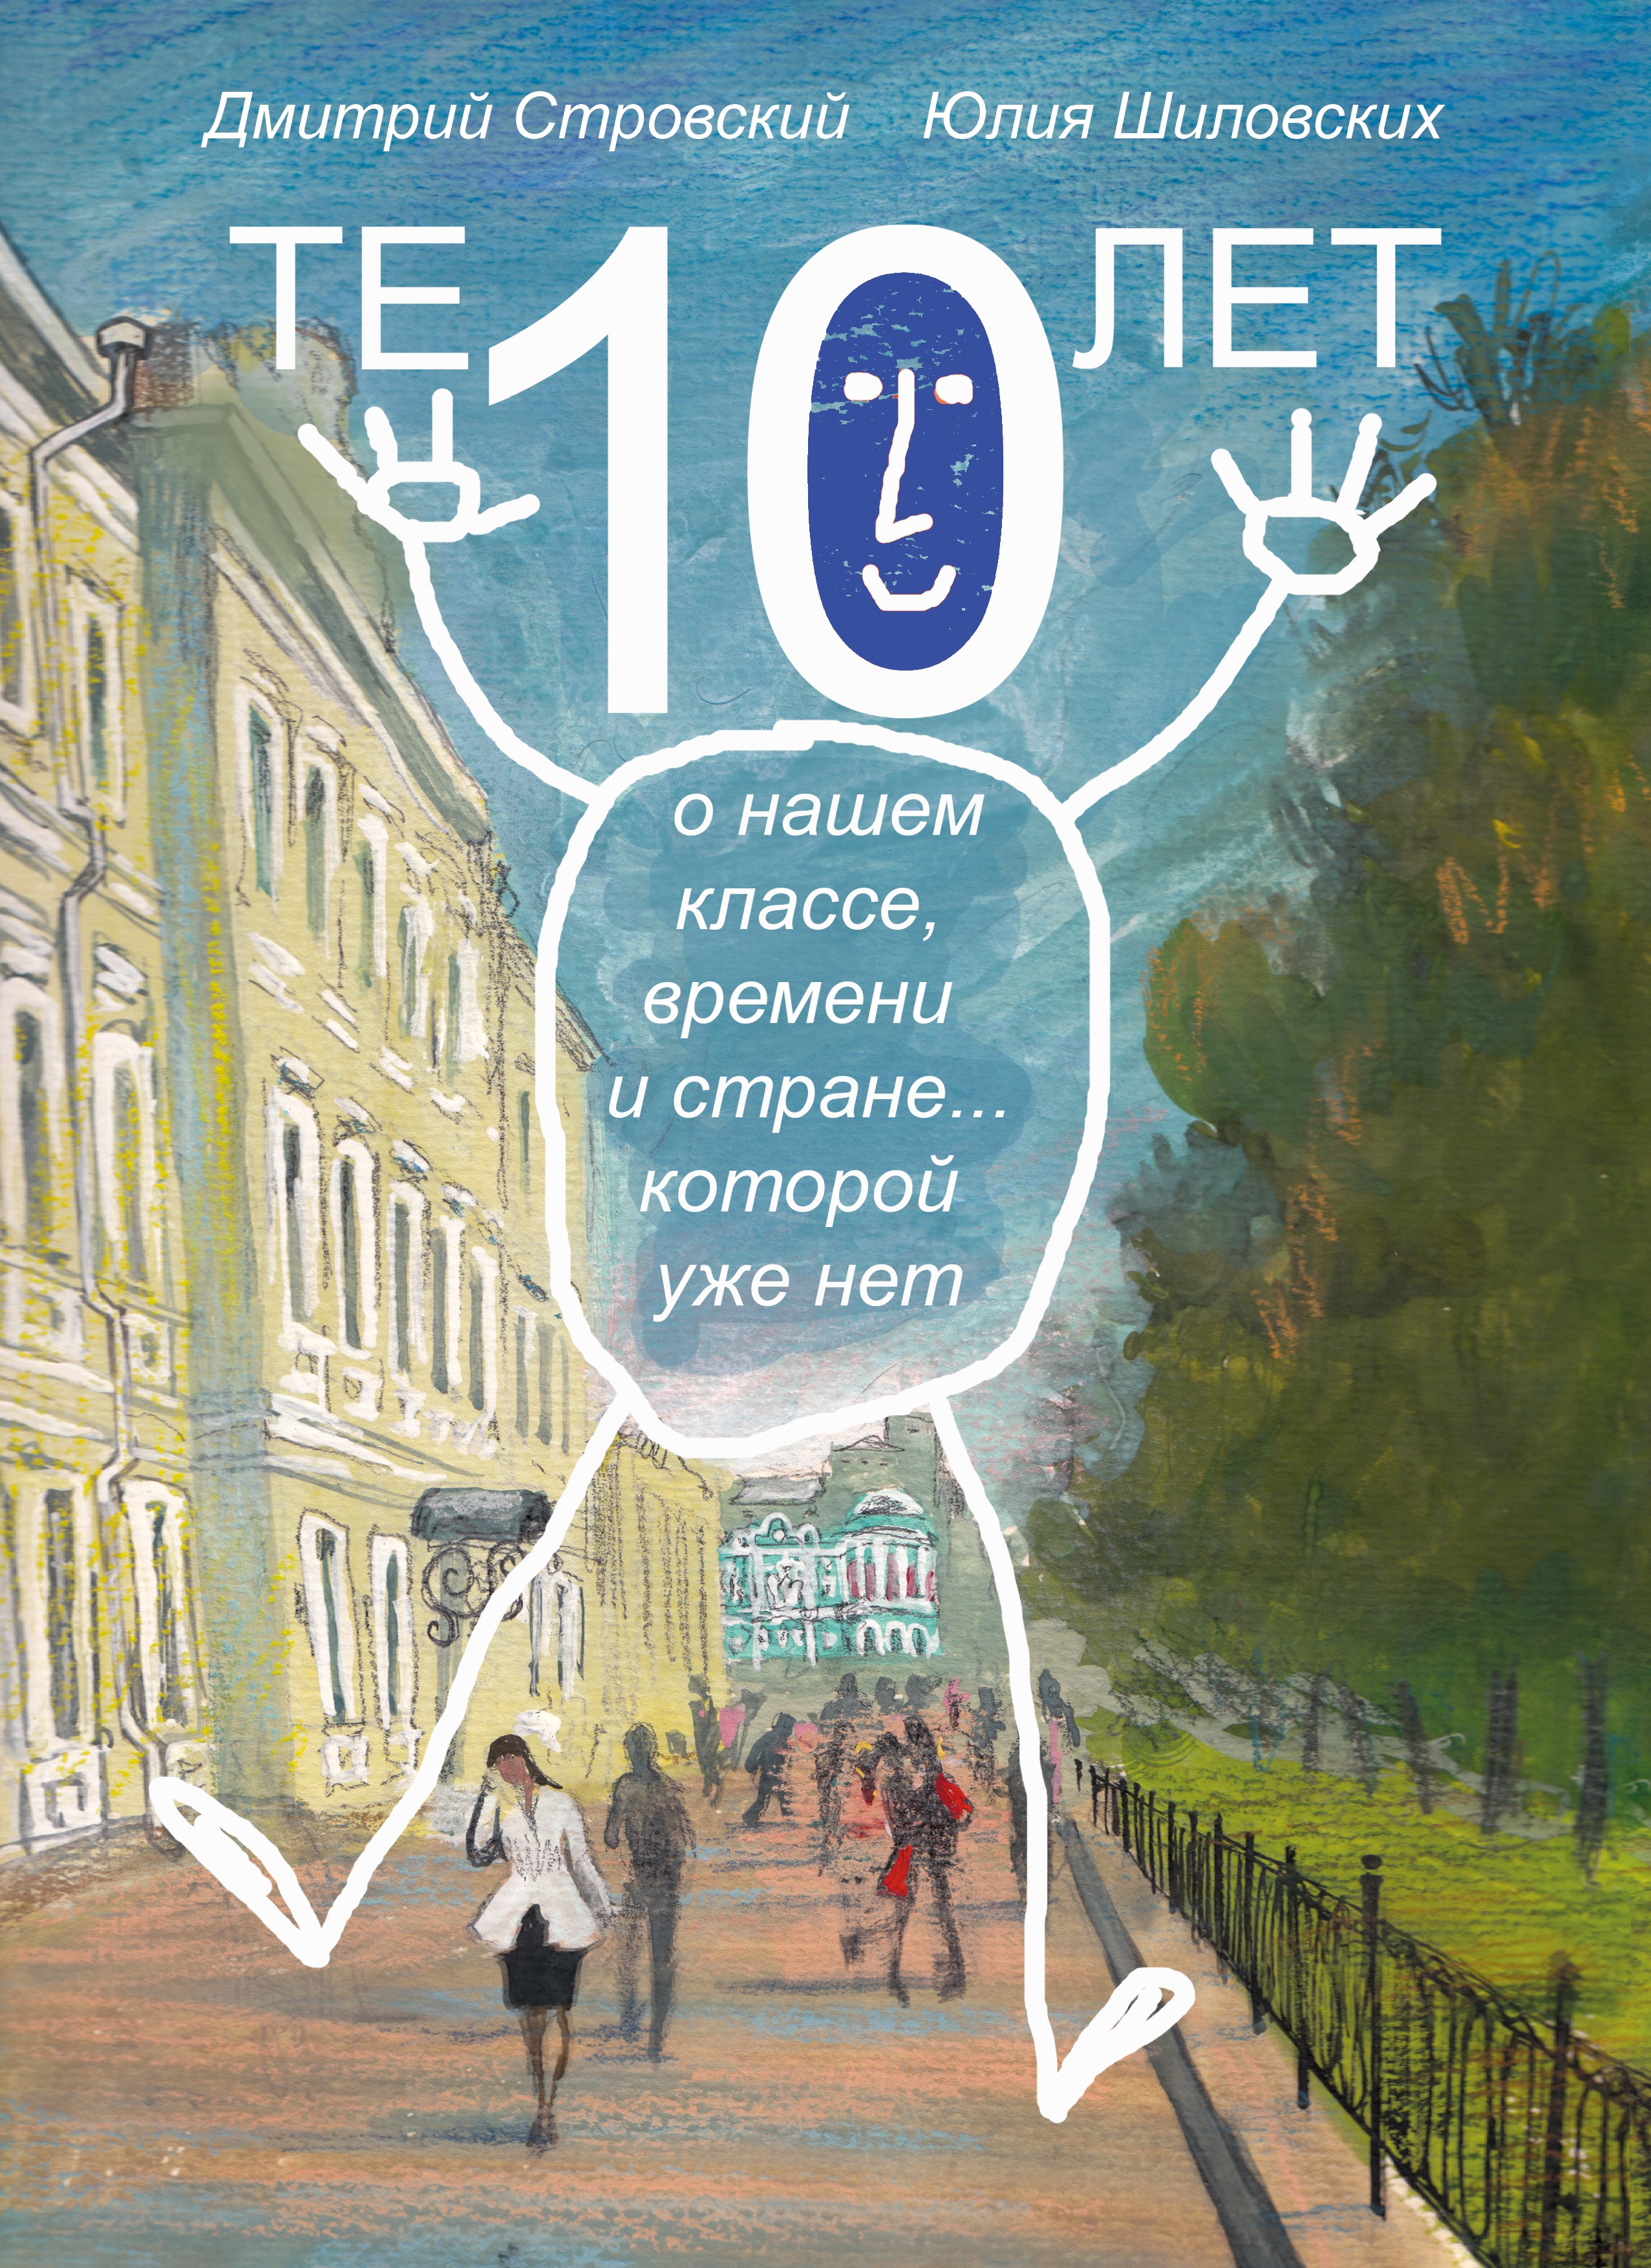 Thumbnail for the post titled: Презентация книги «Те 10 лет»